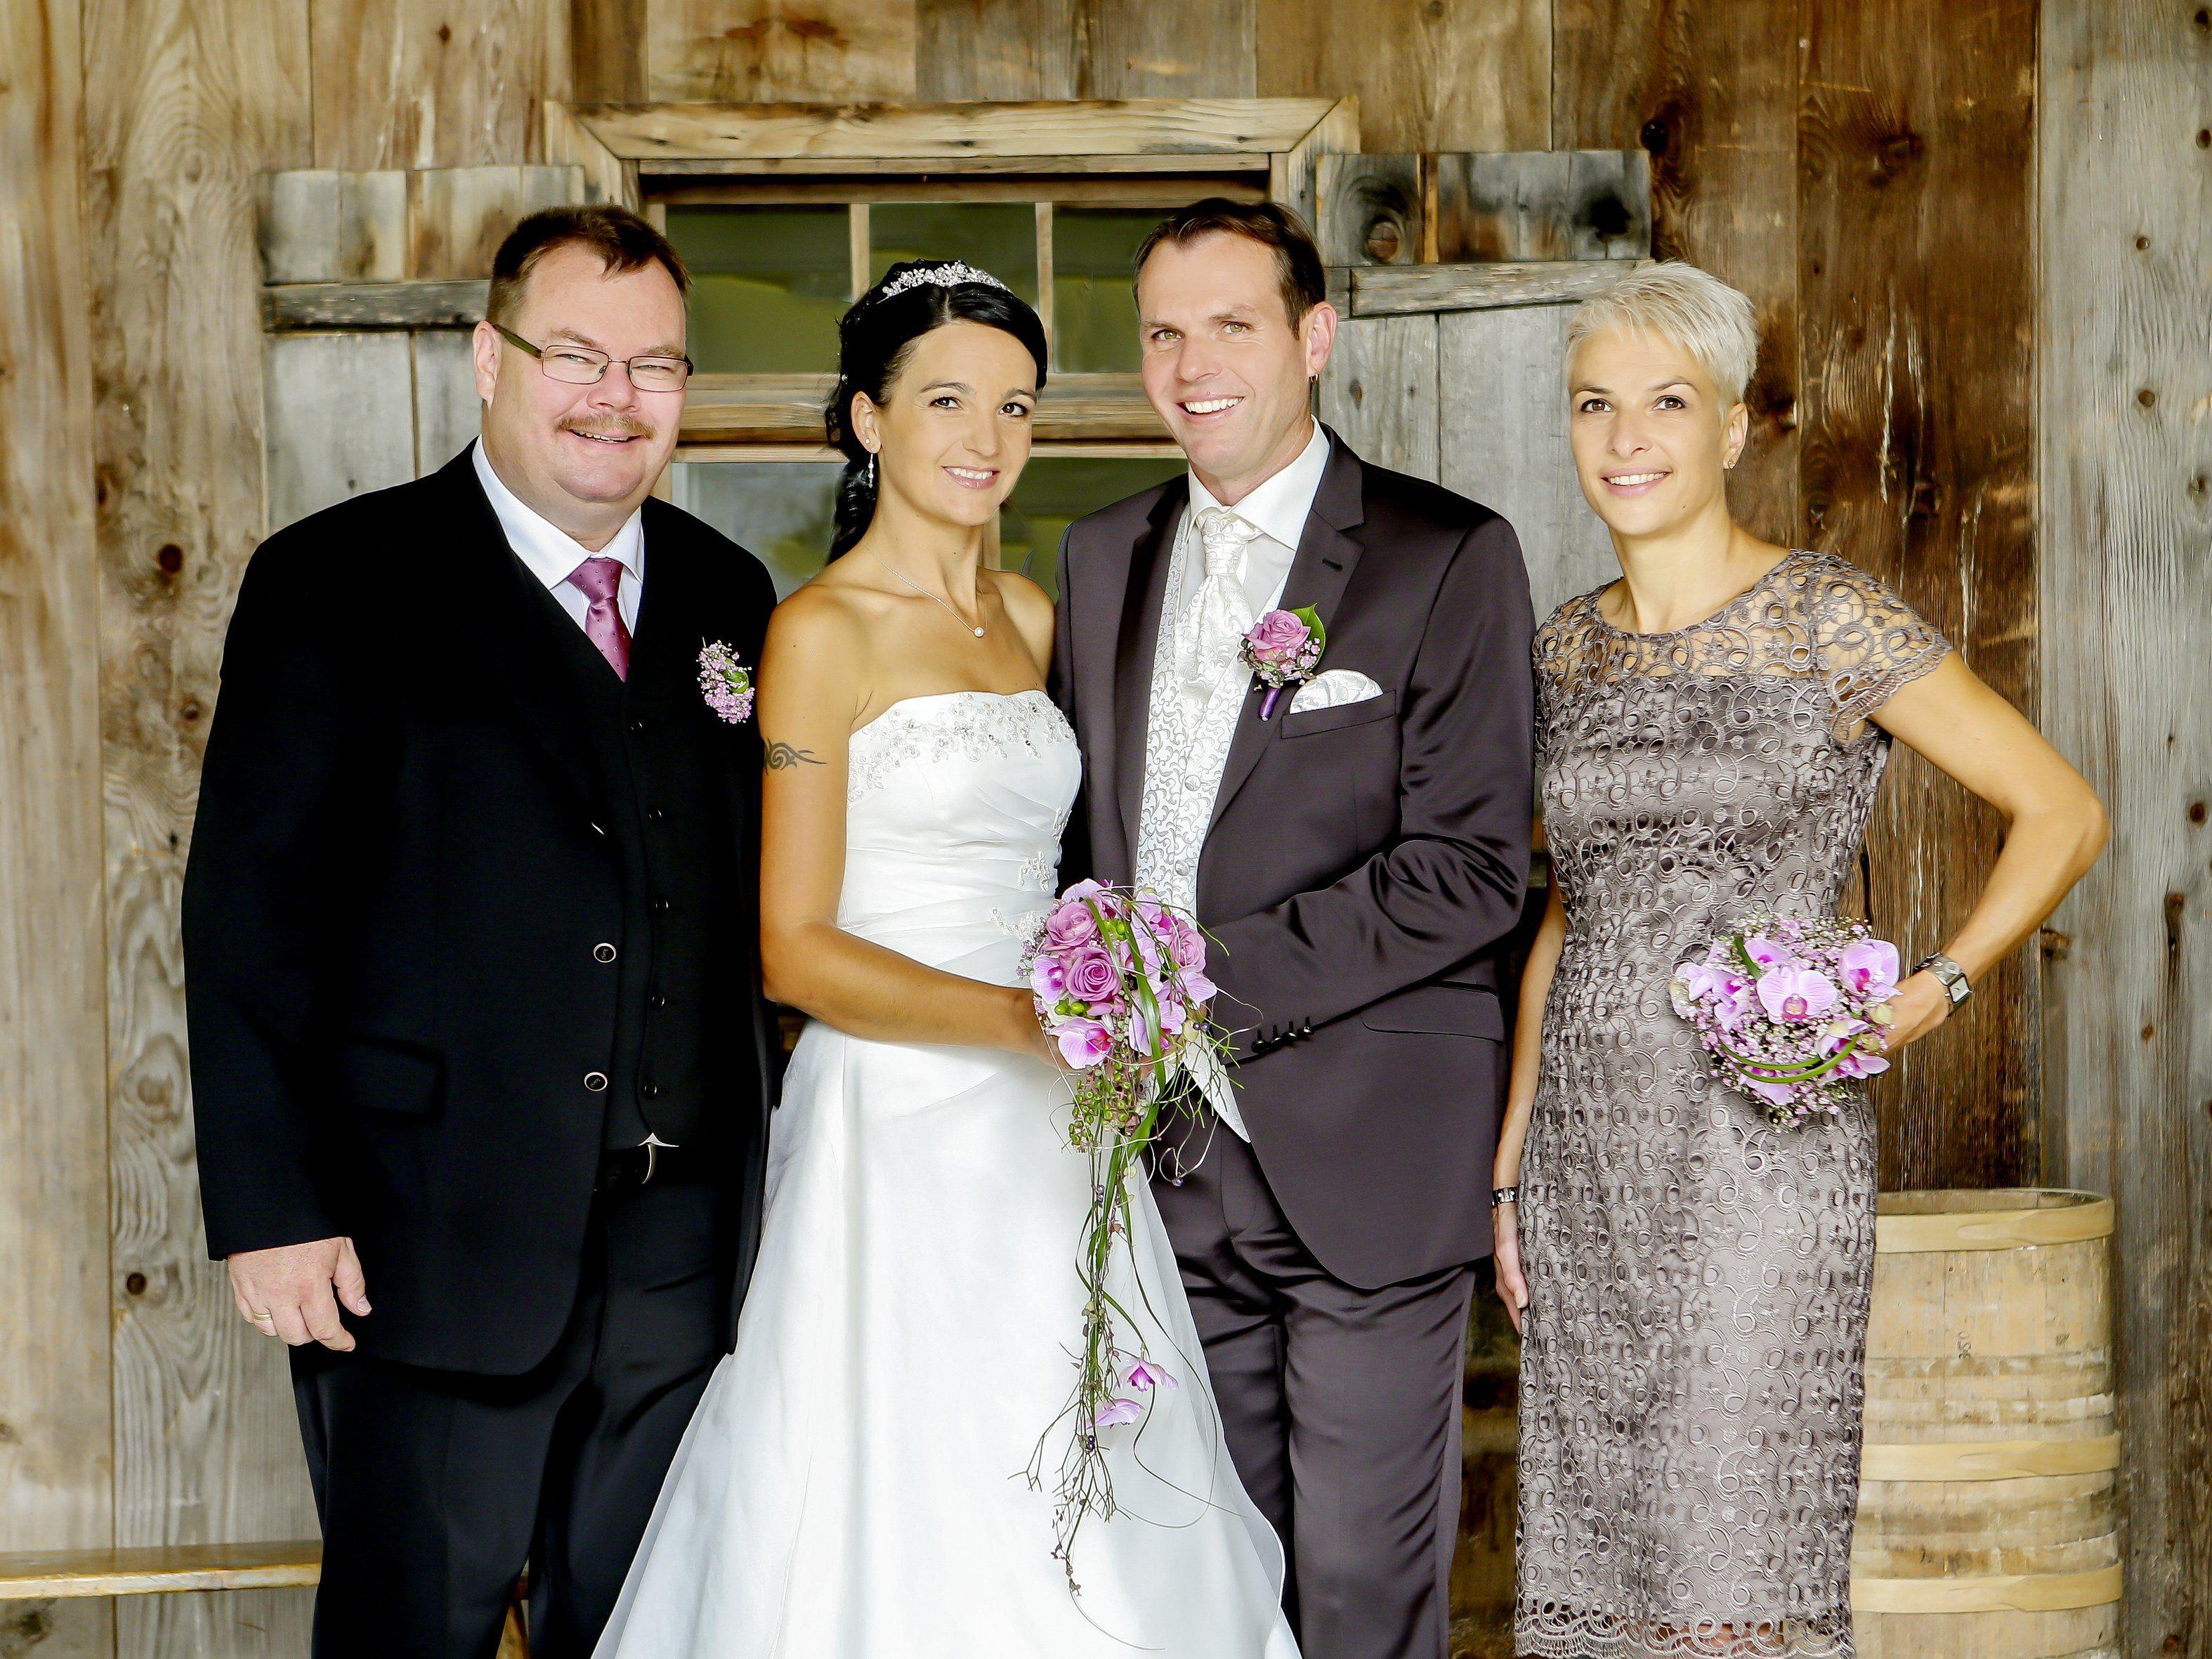 Bianka und Gottlieb Hartmann haben in der Kirche Düns geheiratet